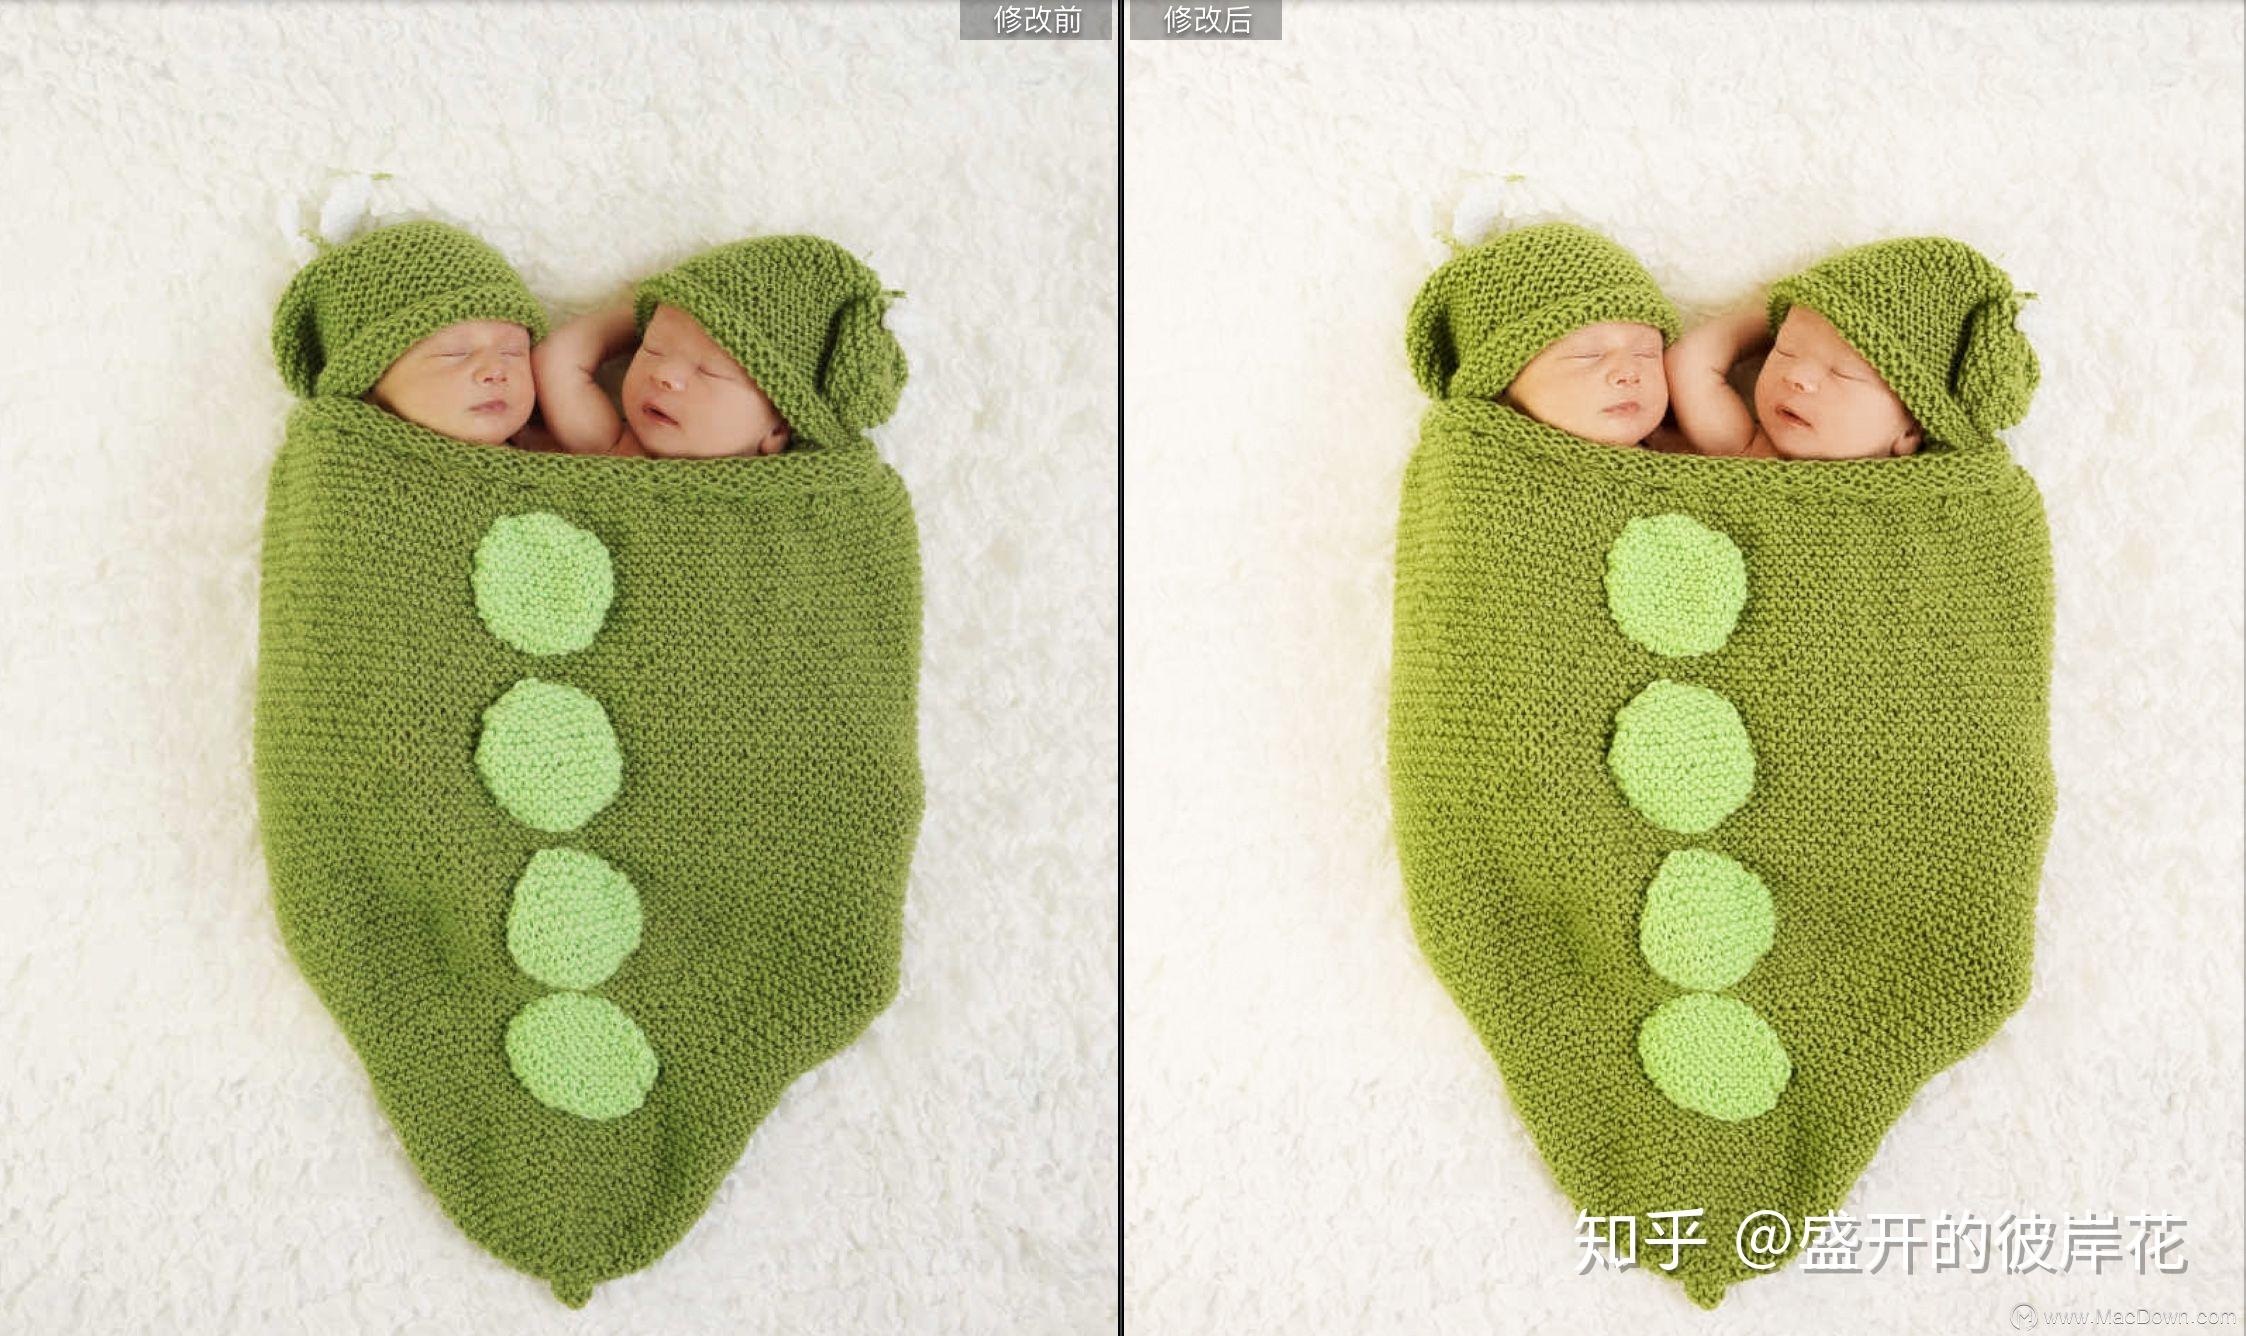 新生婴儿照片乳白色lr预设是一套适用于人婴儿摄影后期调色的lr预设